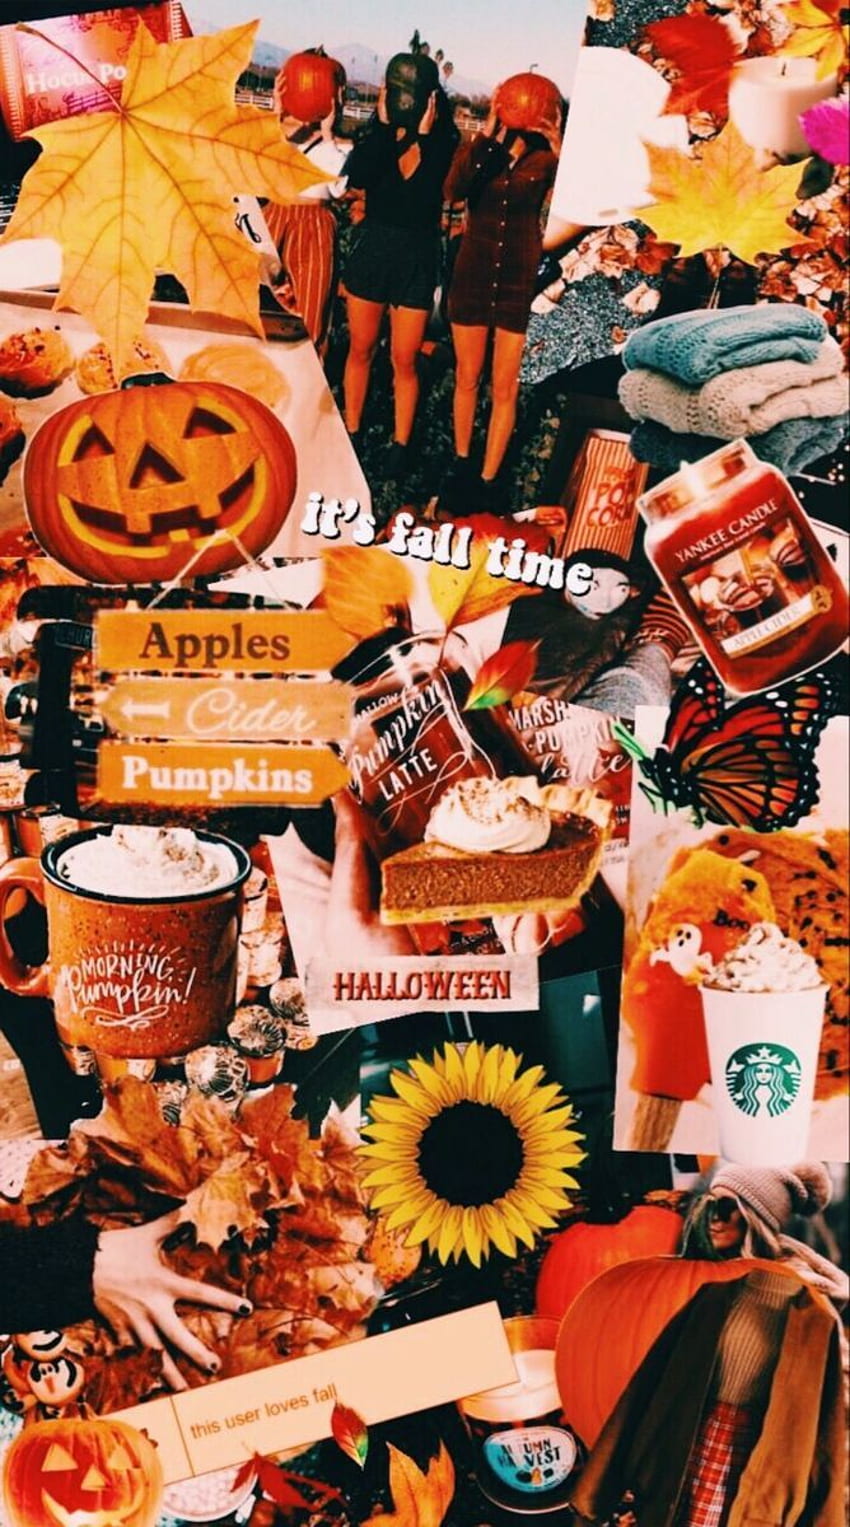 ¡Slopezy en su otoño! en 2020. Halloween iphone, Fall halloween decor, iPhone fall y Halloween Collage fondo de pantalla del teléfono